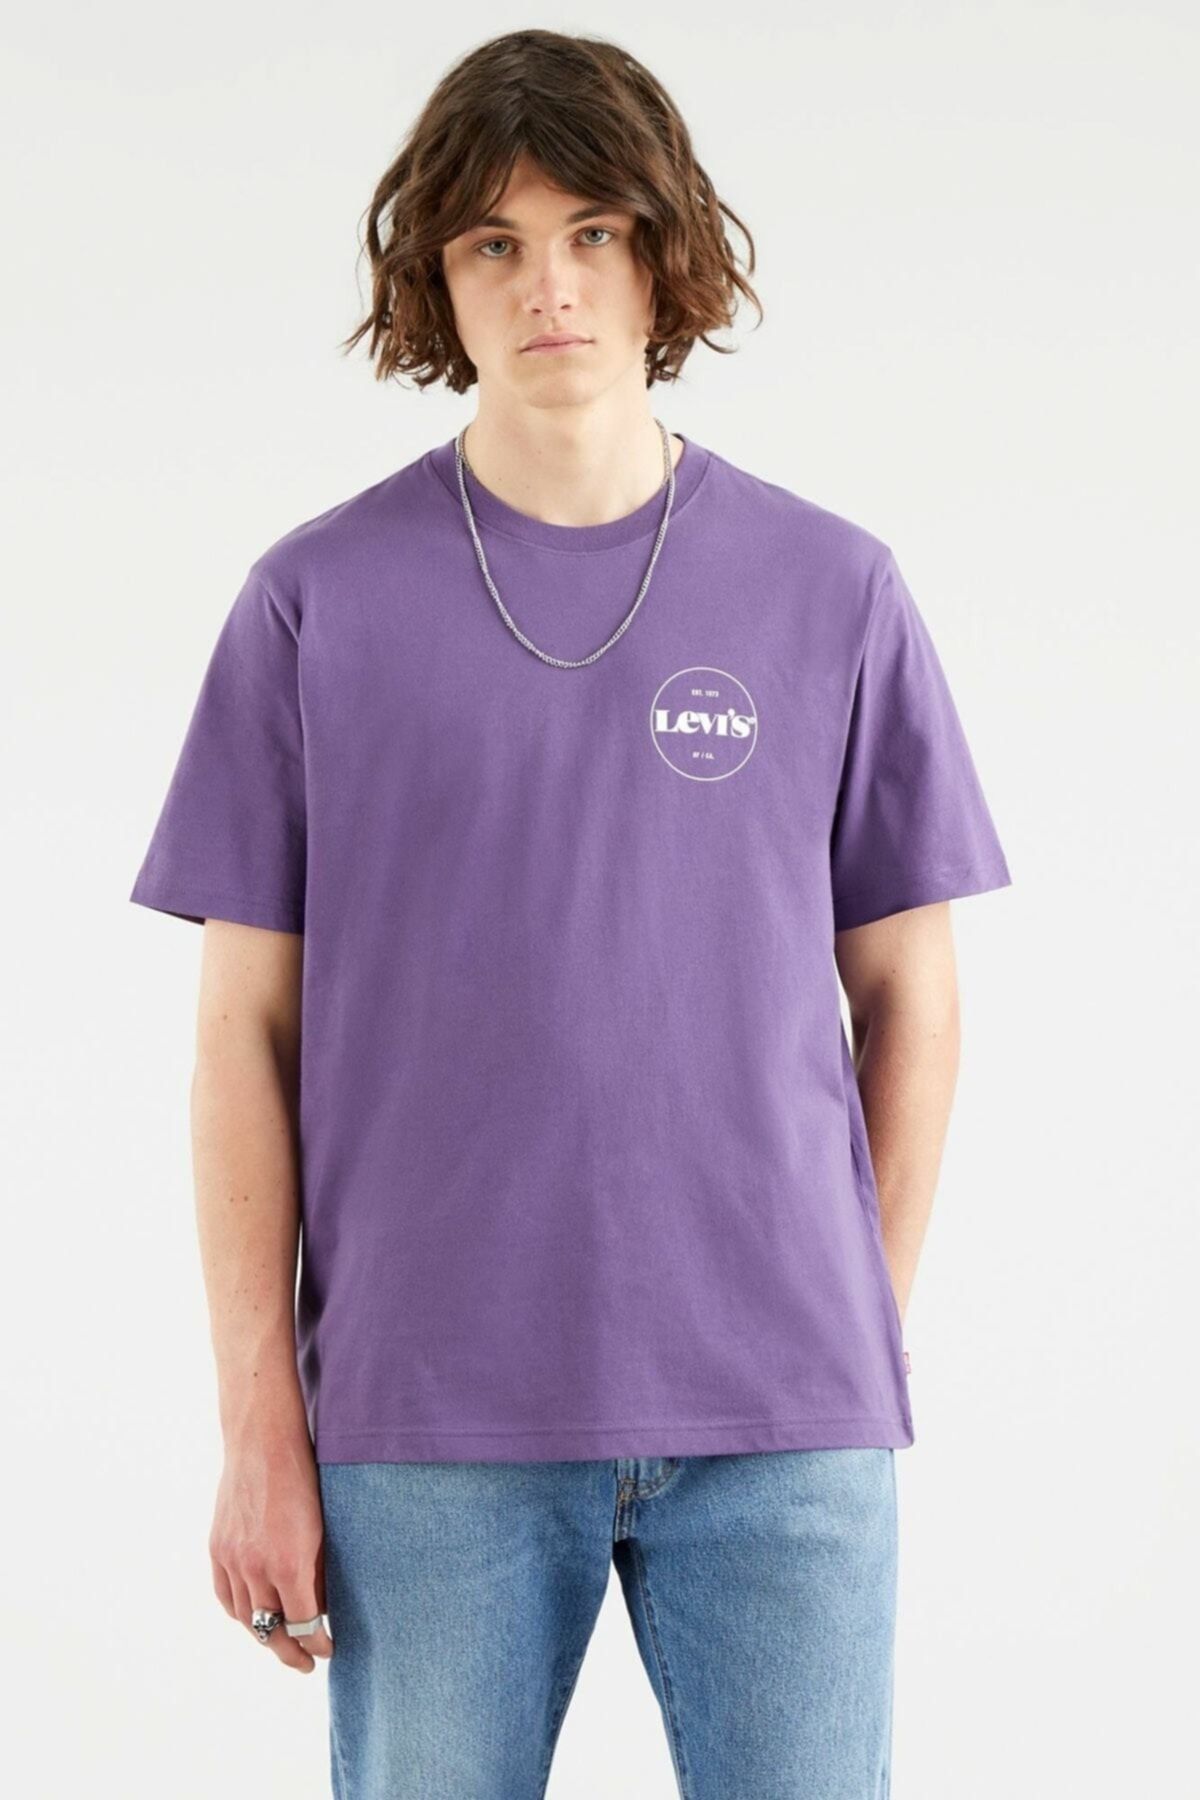 Levi's Erkek Ss Relaxed Fıt Tee Corelogo Mv Loganber T-Shirt 16143-0120  Fiyatı, Yorumları - TRENDYOL